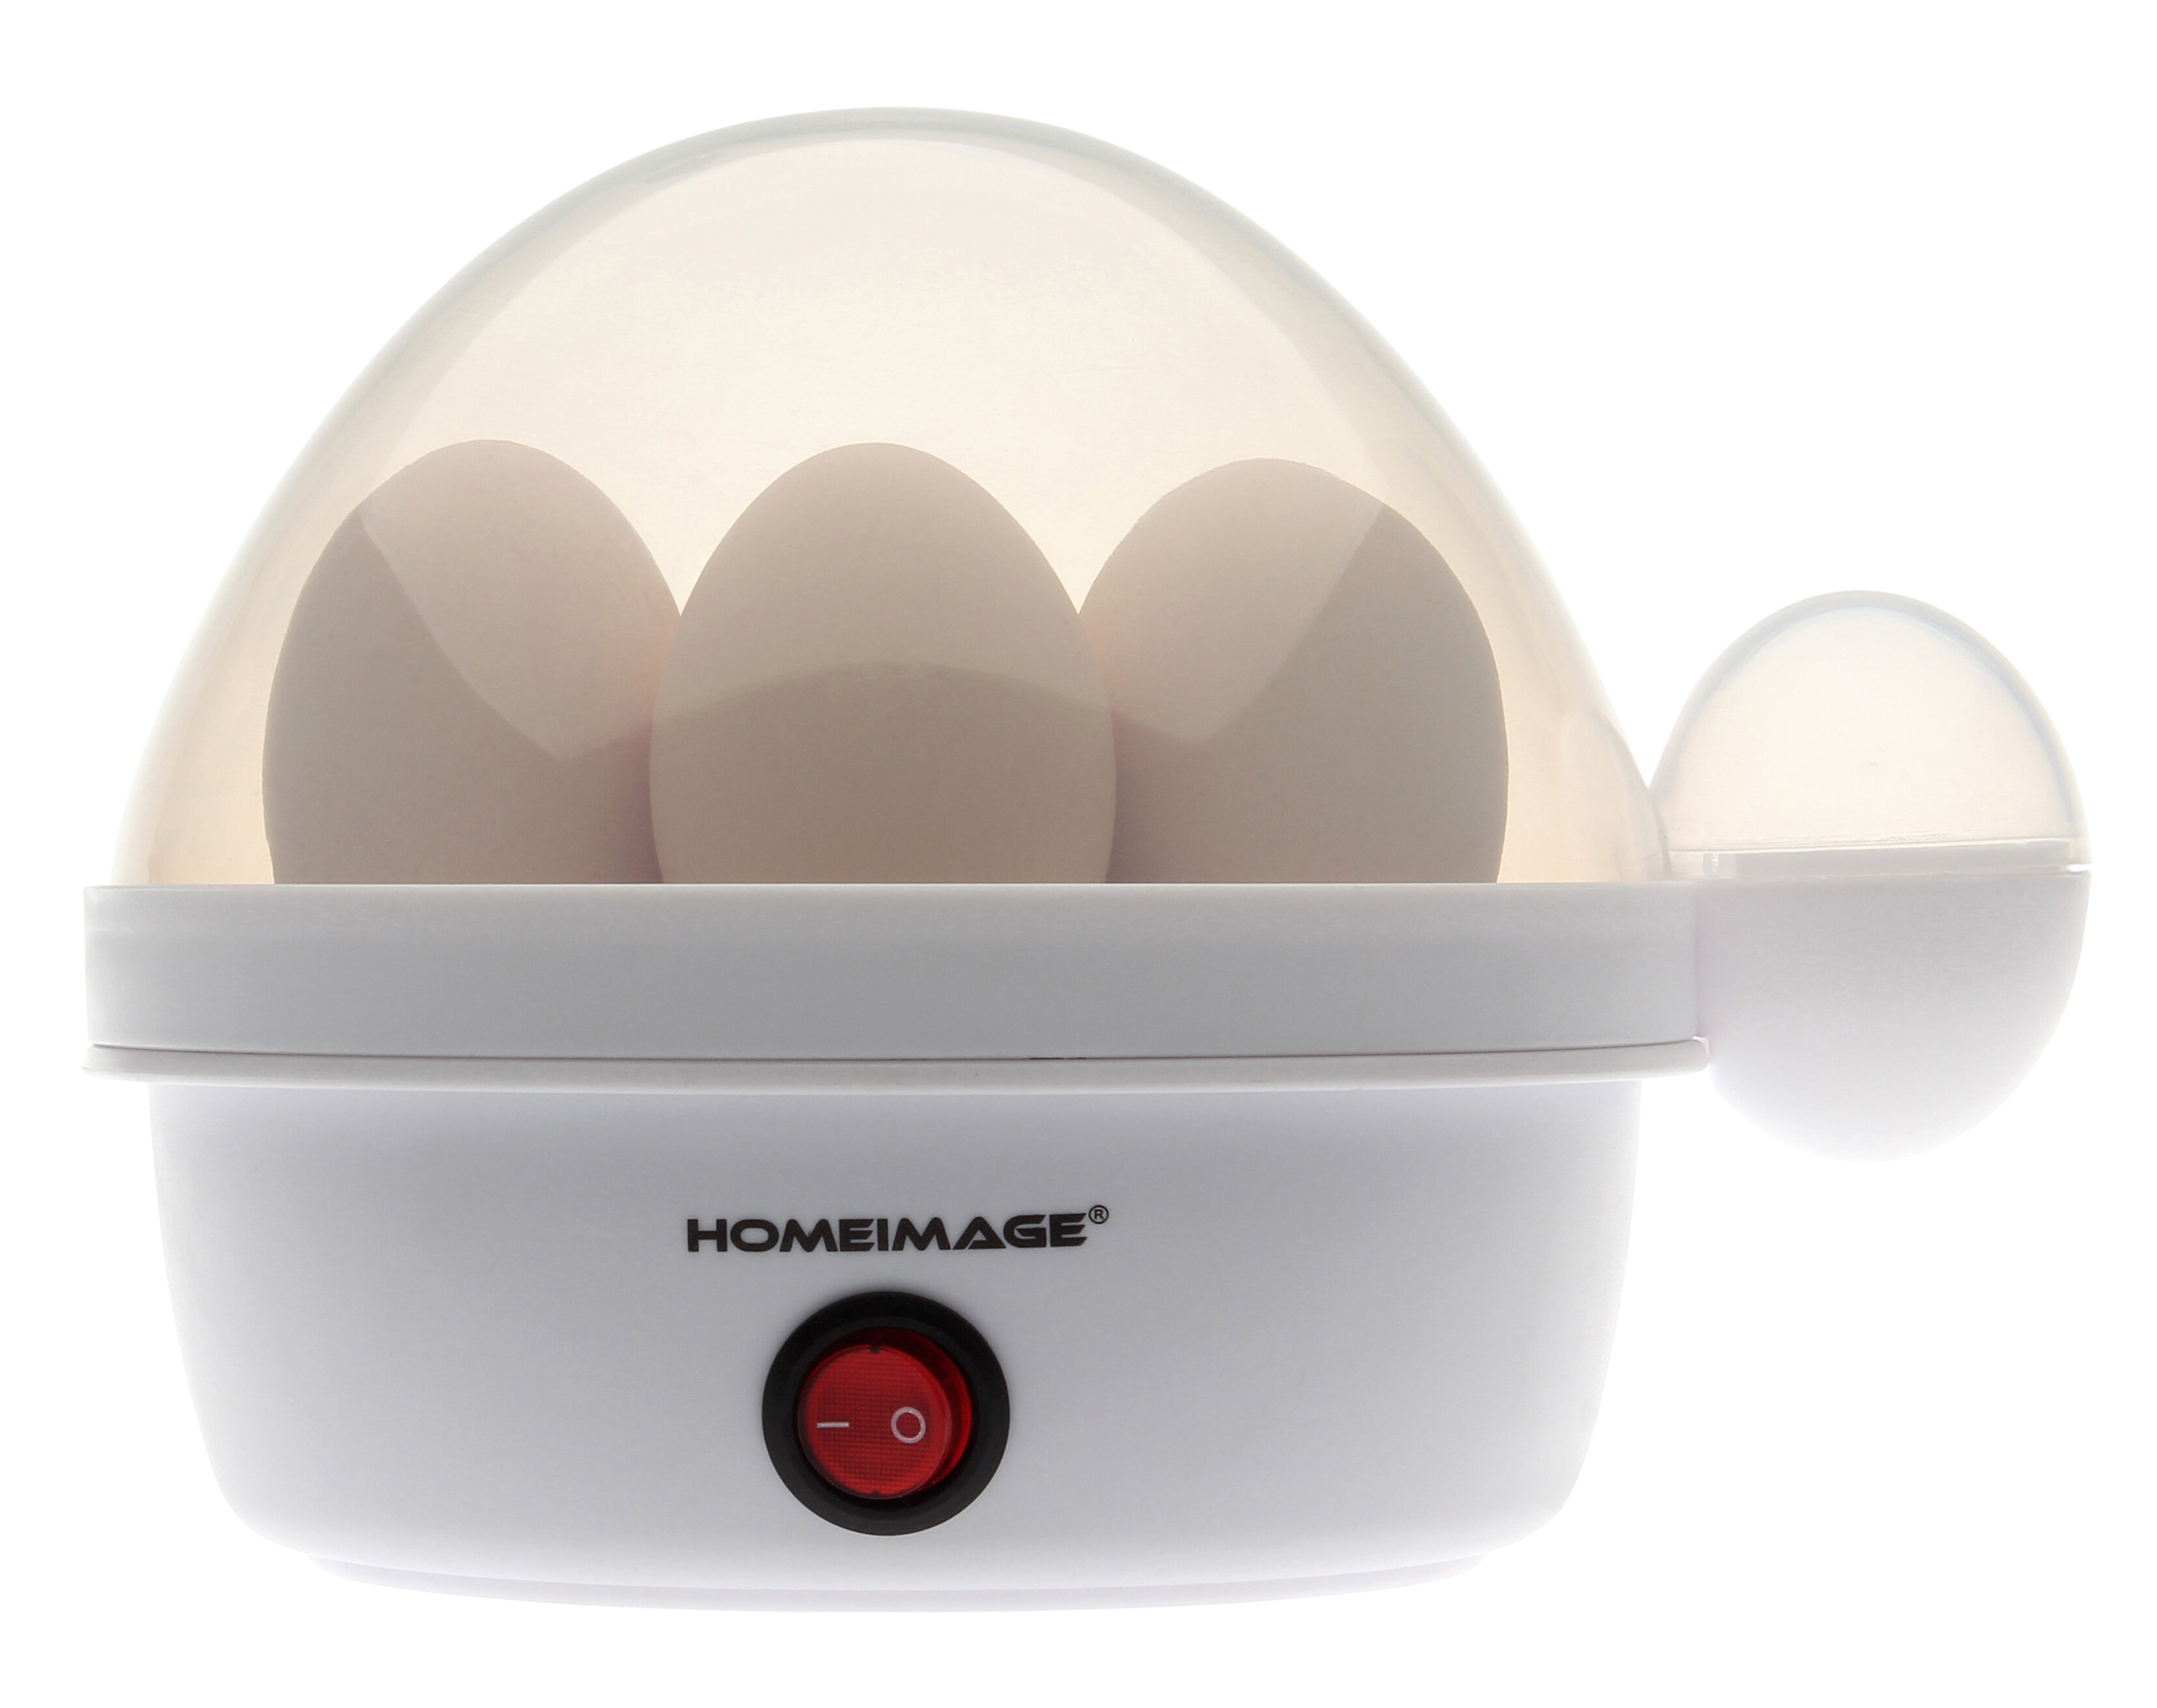 buy egg boiler